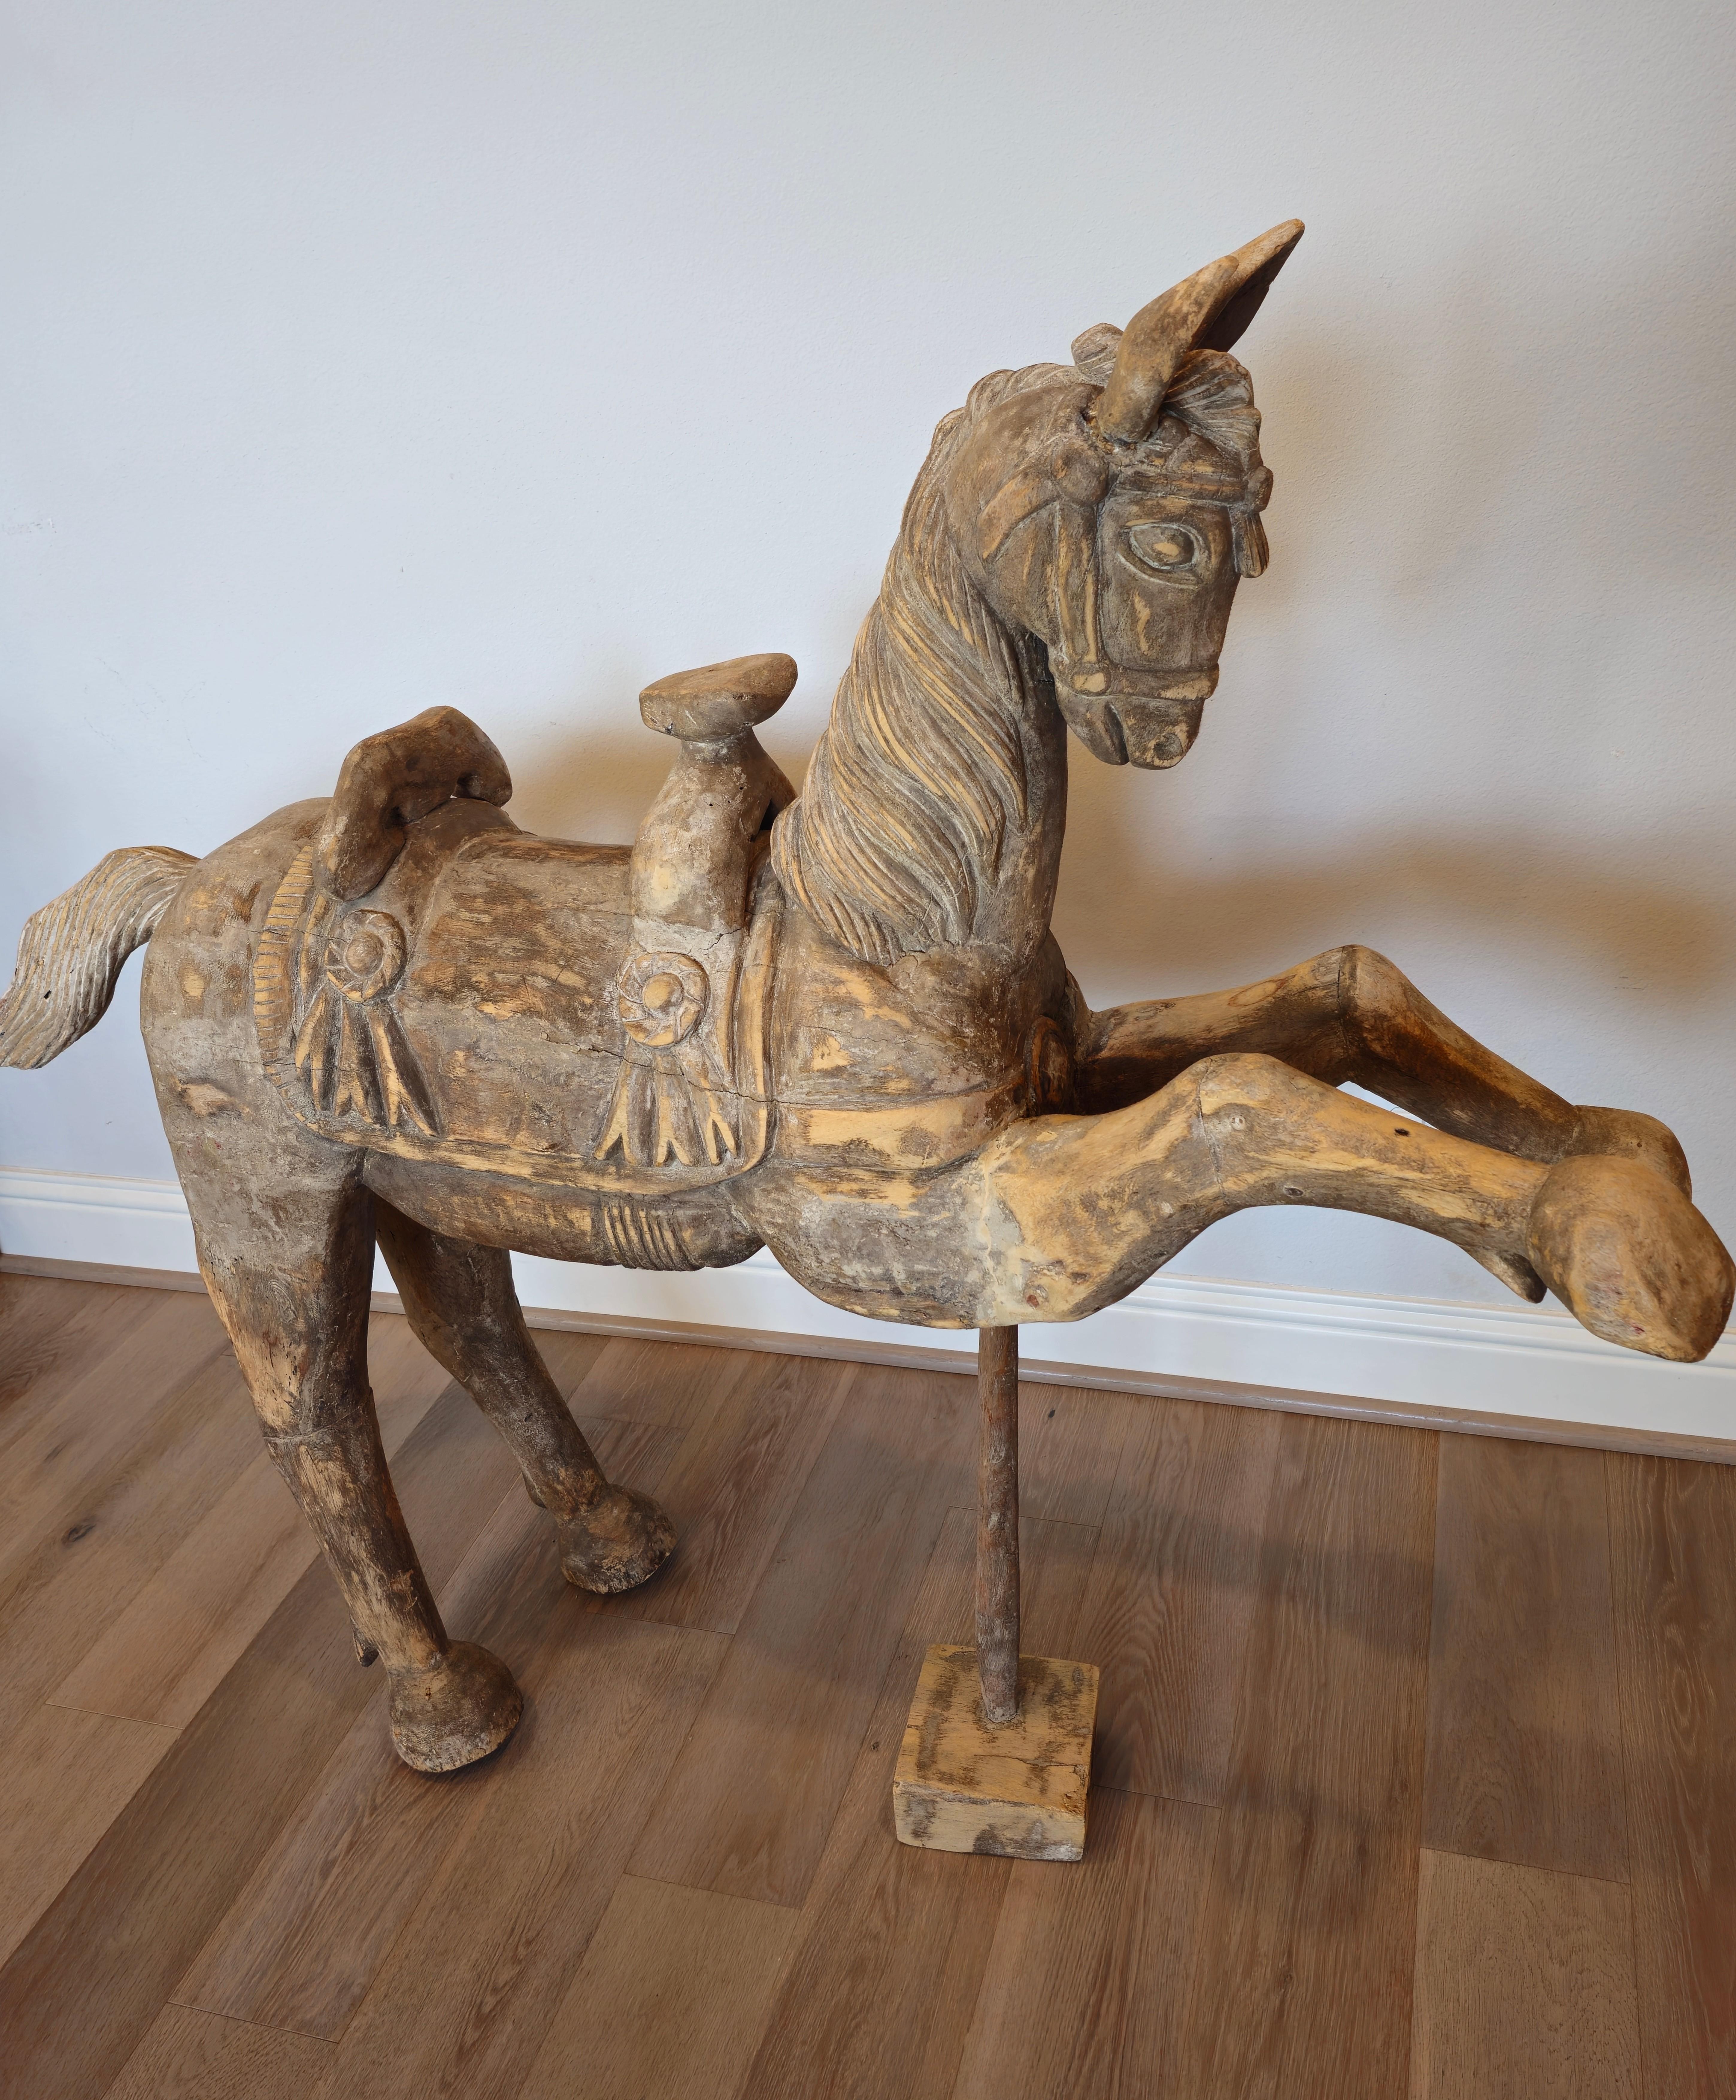 Une grande sculpture ancienne de cheval en bois, sculptée à la main, sur pied. Probablement originaire d'Asie du Sud-Est (Indonésie, Birmanie, Thaïlande) au début du 20e siècle, cette sculpture primitive en bois tendre léger est exceptionnellement